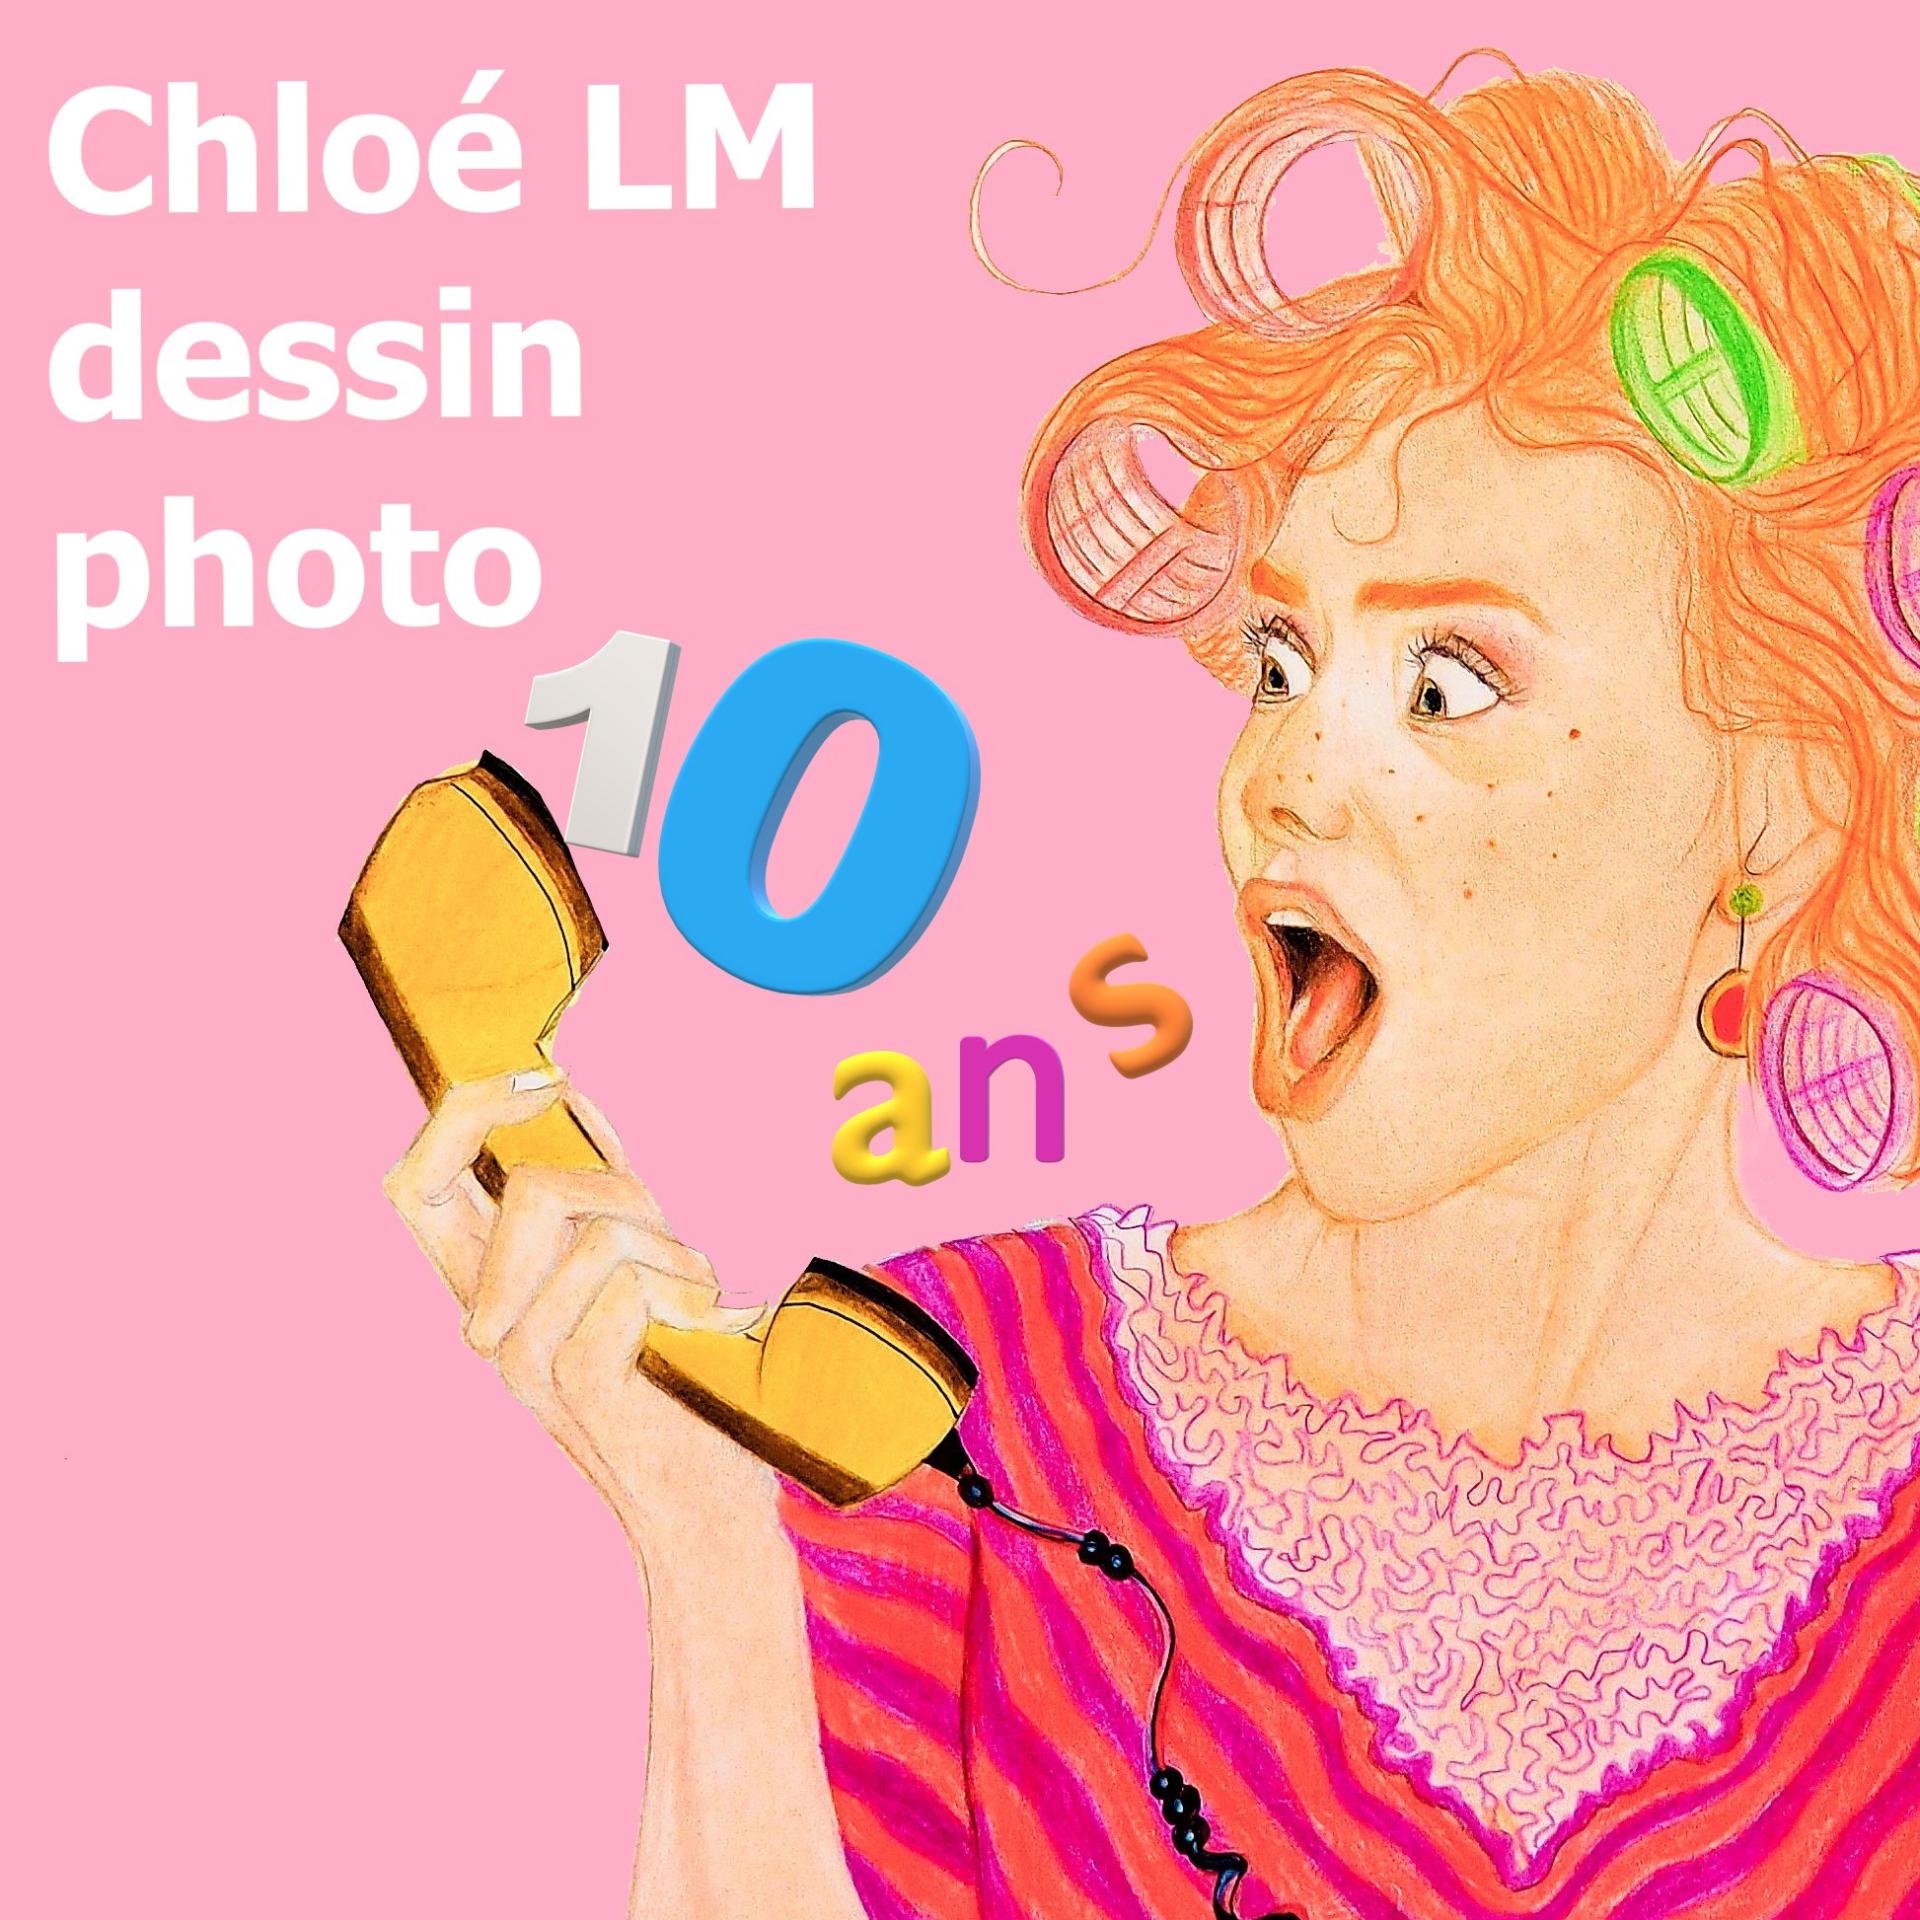 Chloé LM dessin photo fête des 10 ans